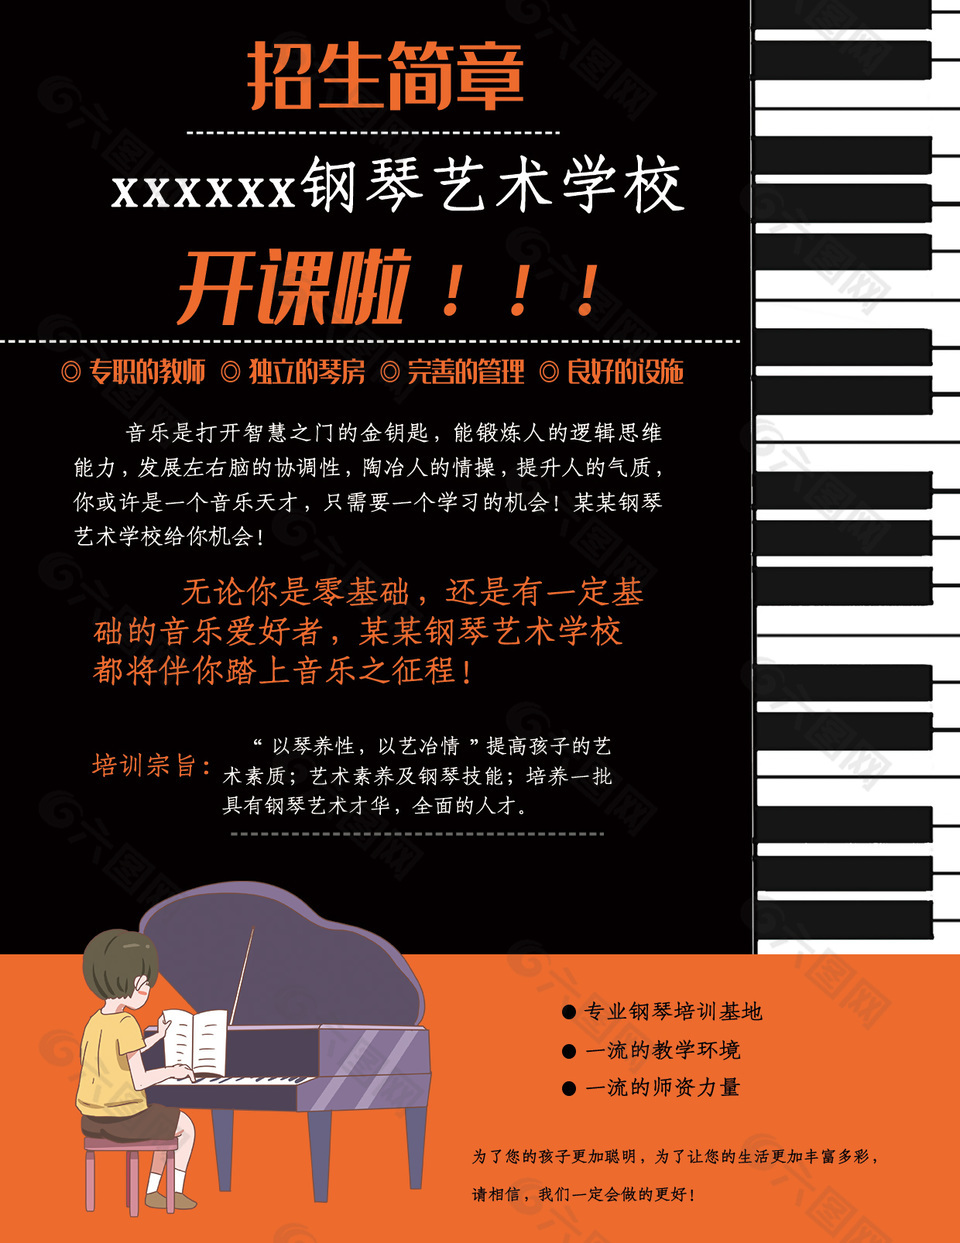 钢琴艺术学校招生简章设计